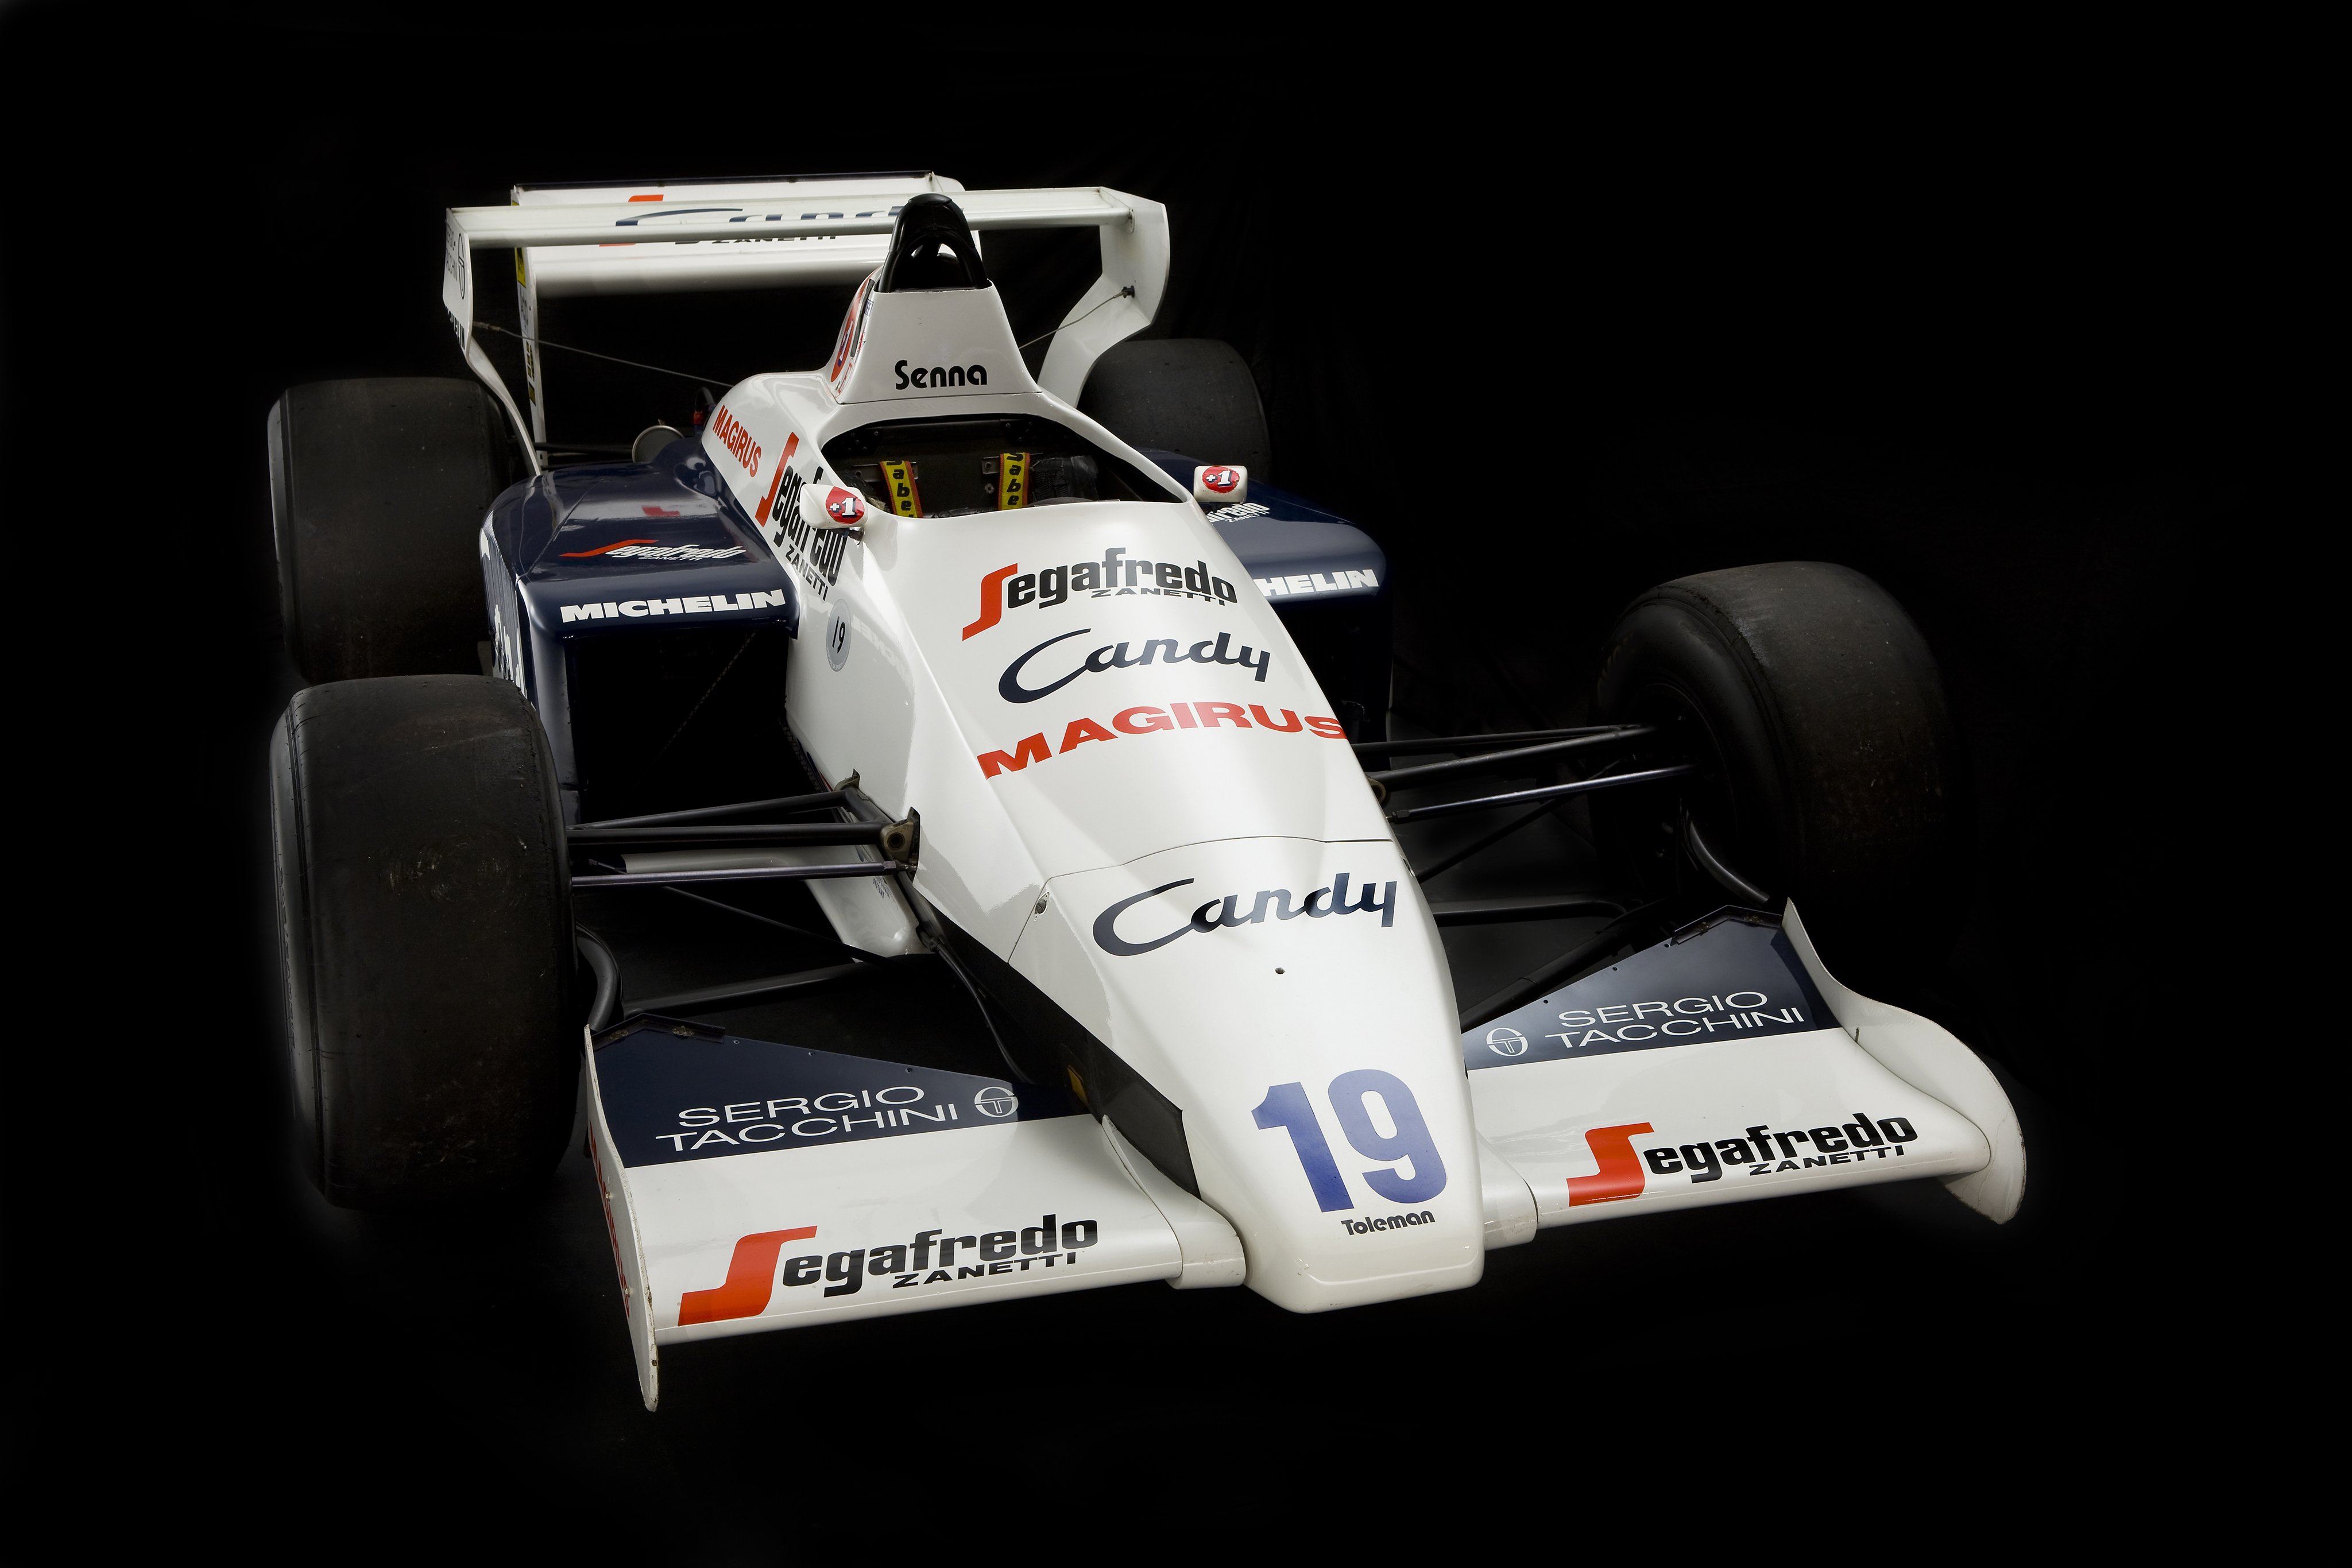 1984, Toleman, Tg184, F 1, Formula, Race, Racing Wallpaper